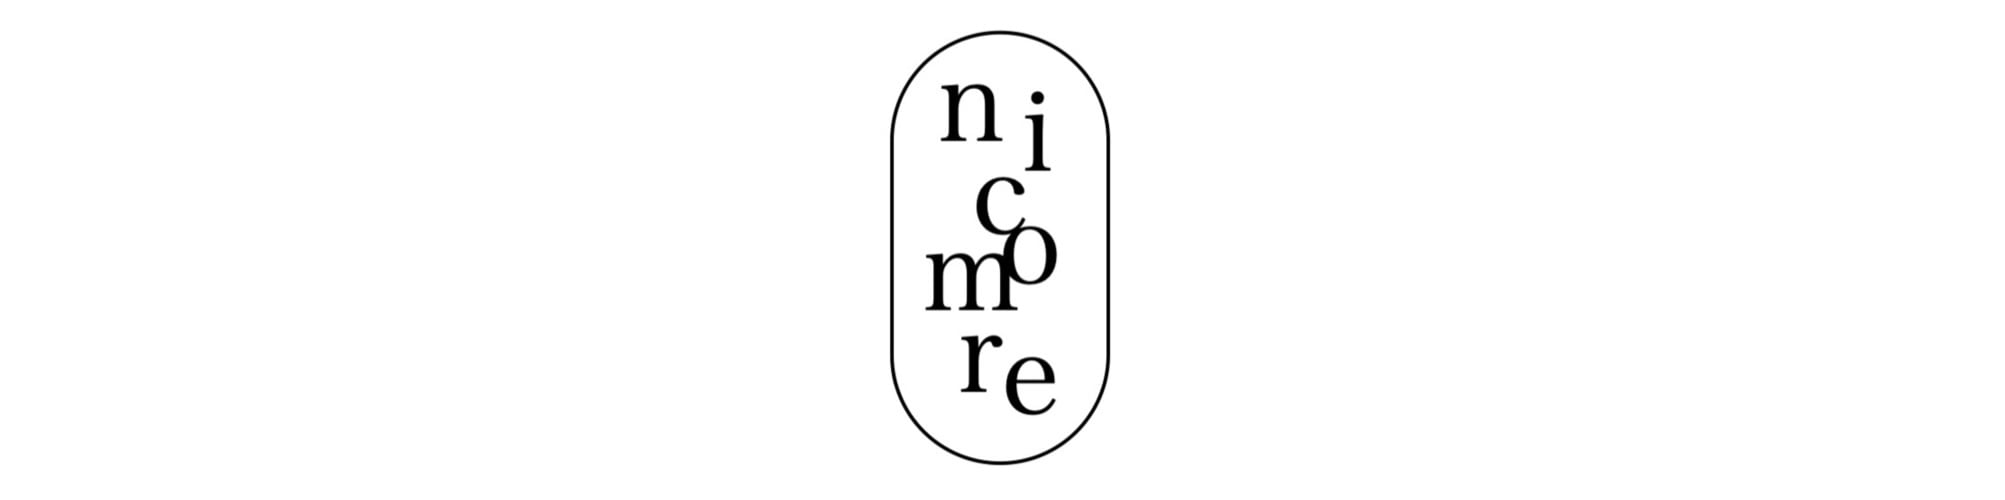 nicomore